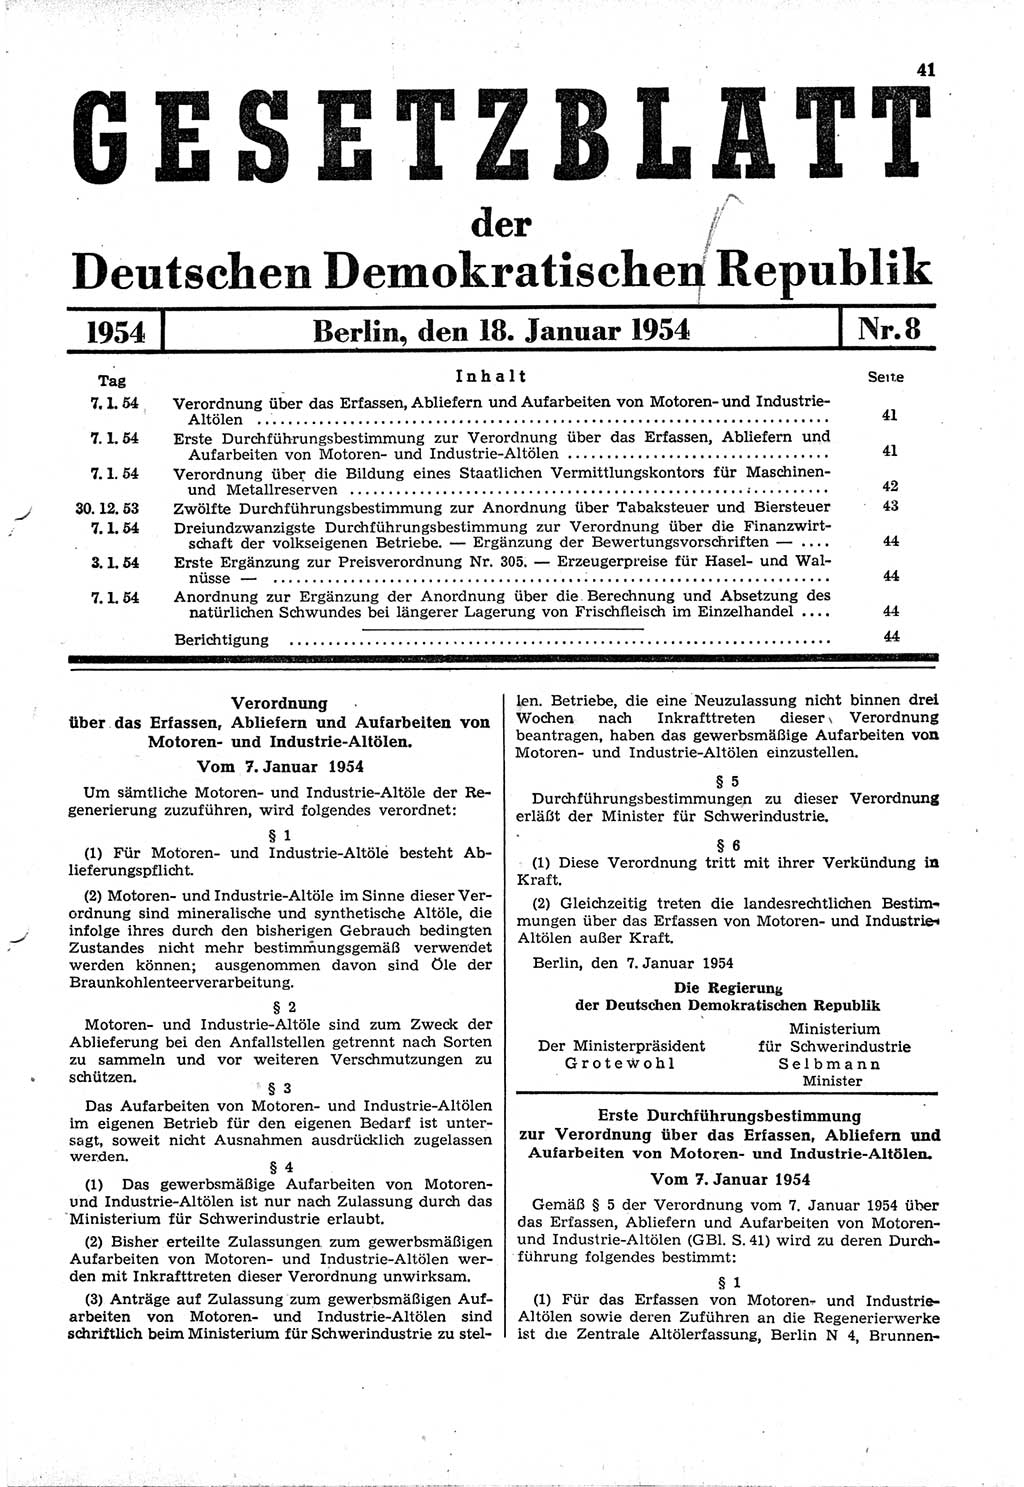 Gesetzblatt (GBl.) der Deutschen Demokratischen Republik (DDR) 1954, Seite 41 (GBl. DDR 1954, S. 41)